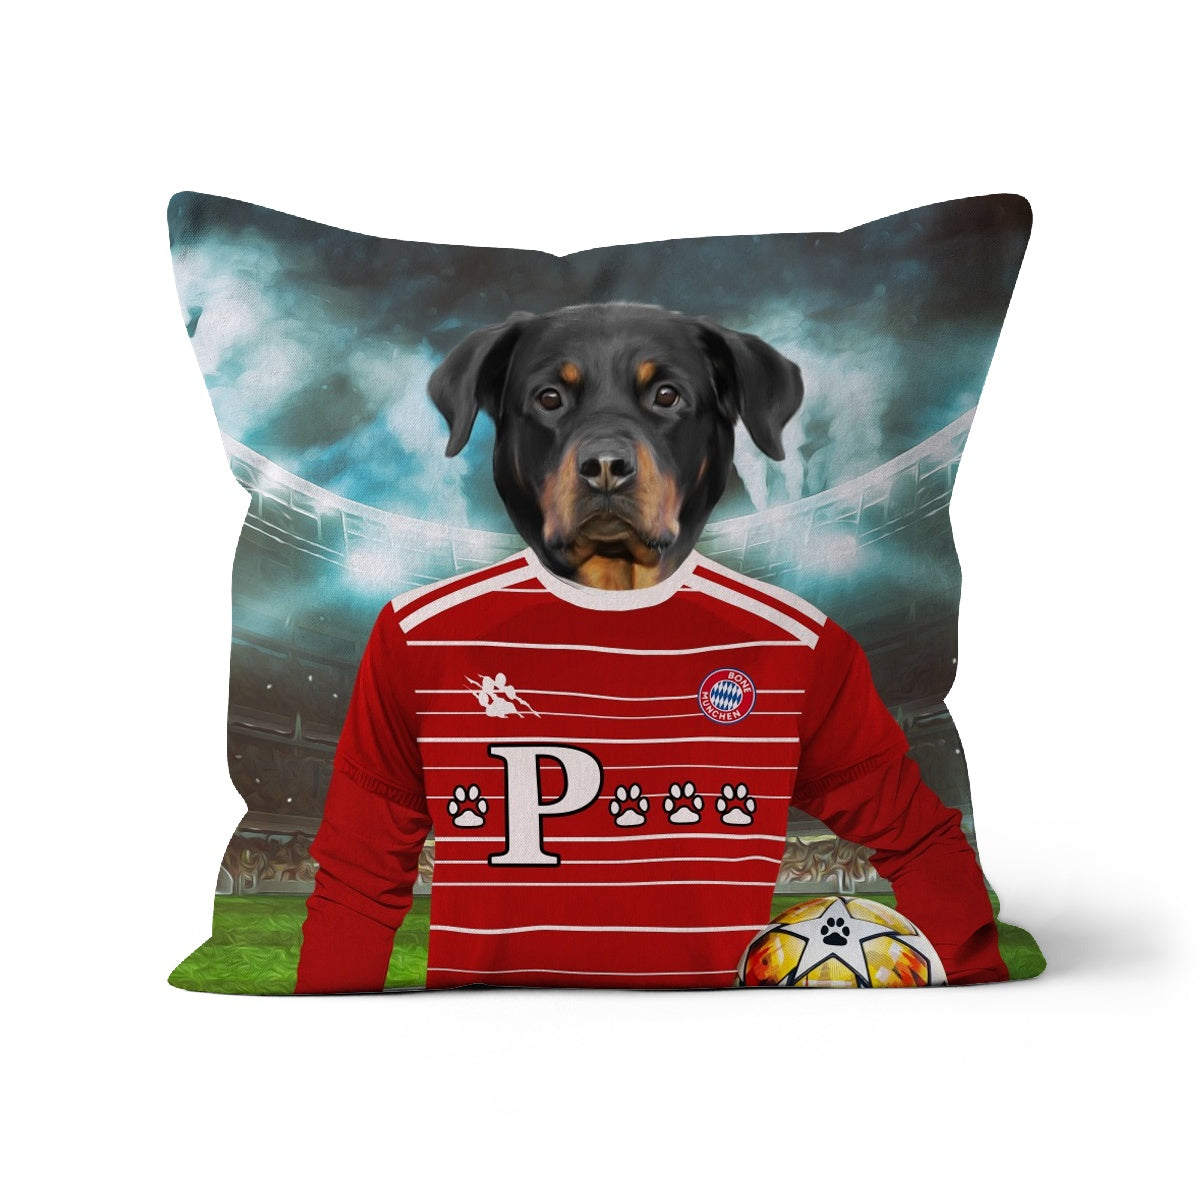 Pawyern Munich Football Club Paw & Glory, pawandglory, dog print pillow, make your pet a pillow, portrait pillow, pillow of my dog, best pet pillow, custom pillow design, Pet Portrait cushion,